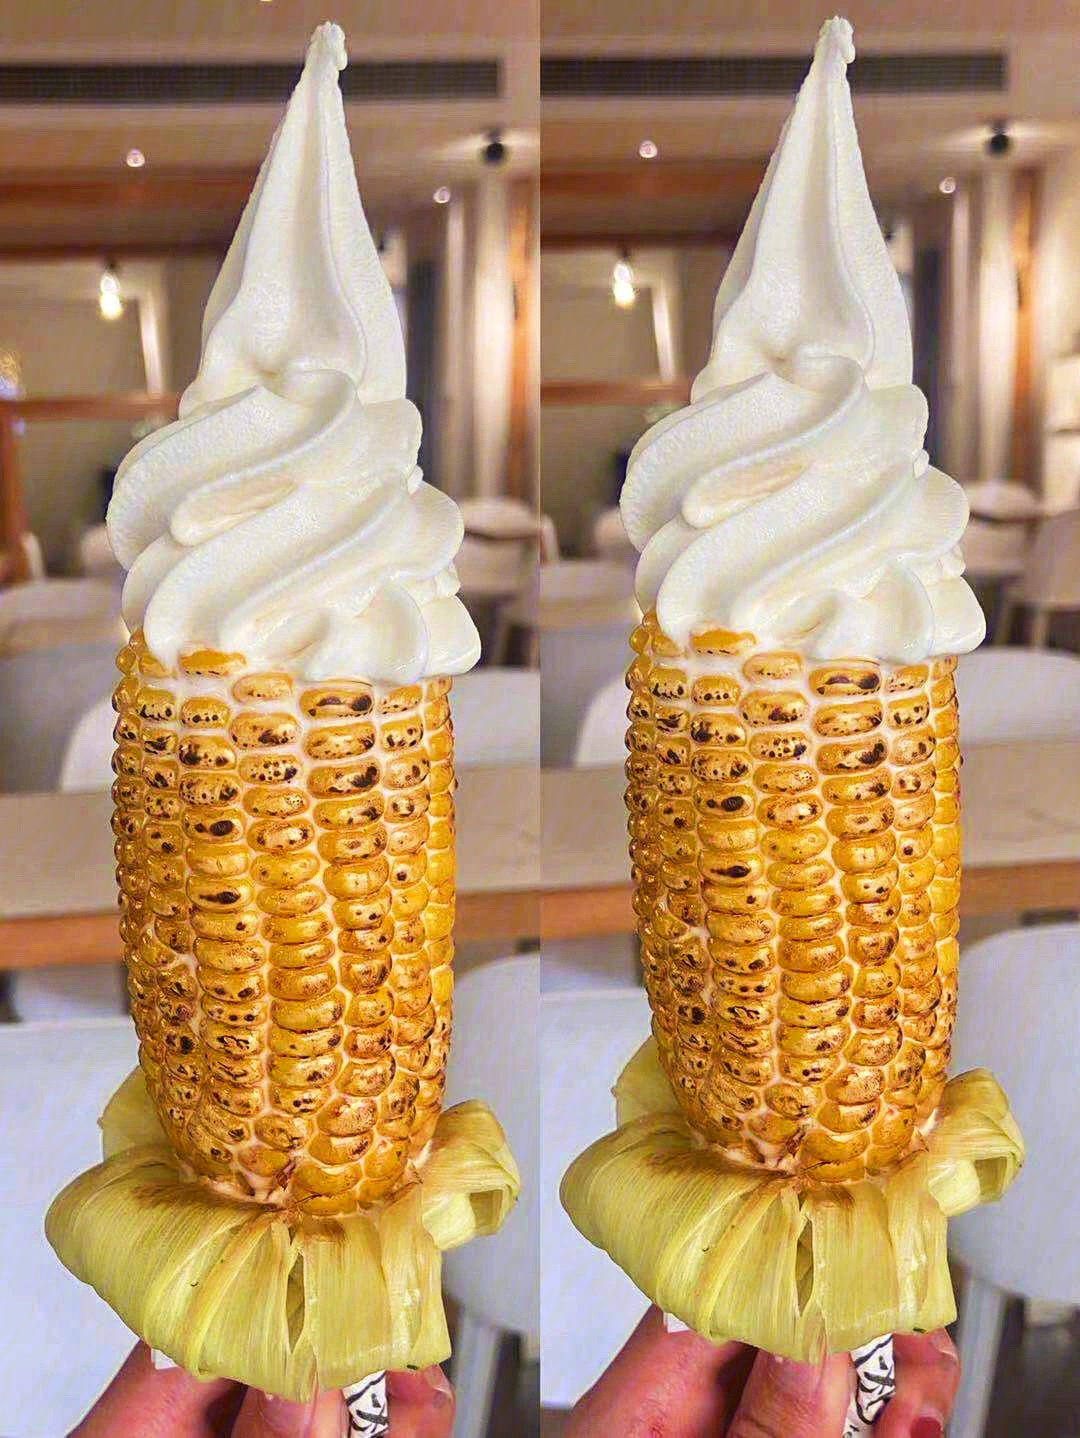 肯德基玉米冰淇淋图片